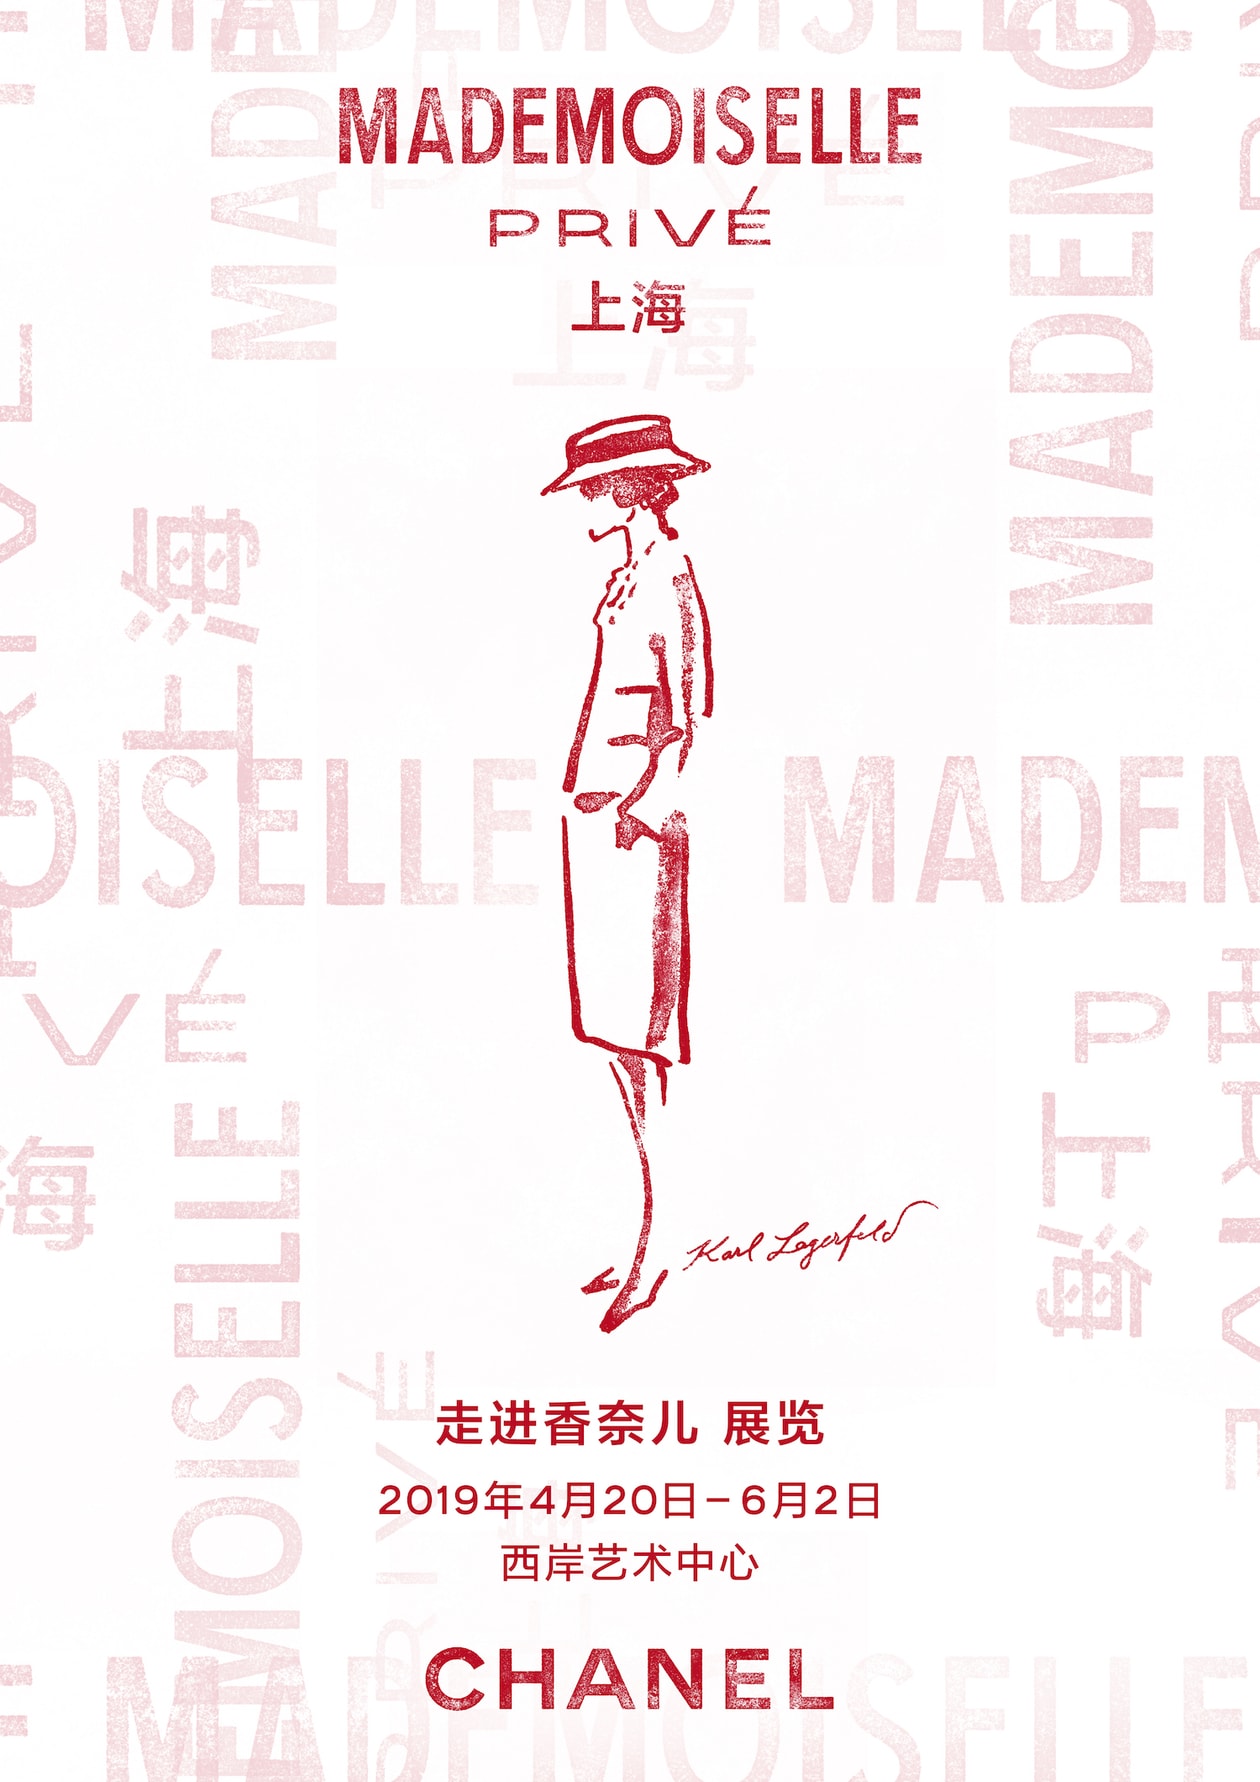 走进 Mademoiselle Privé《走进香奈儿》展览上海站